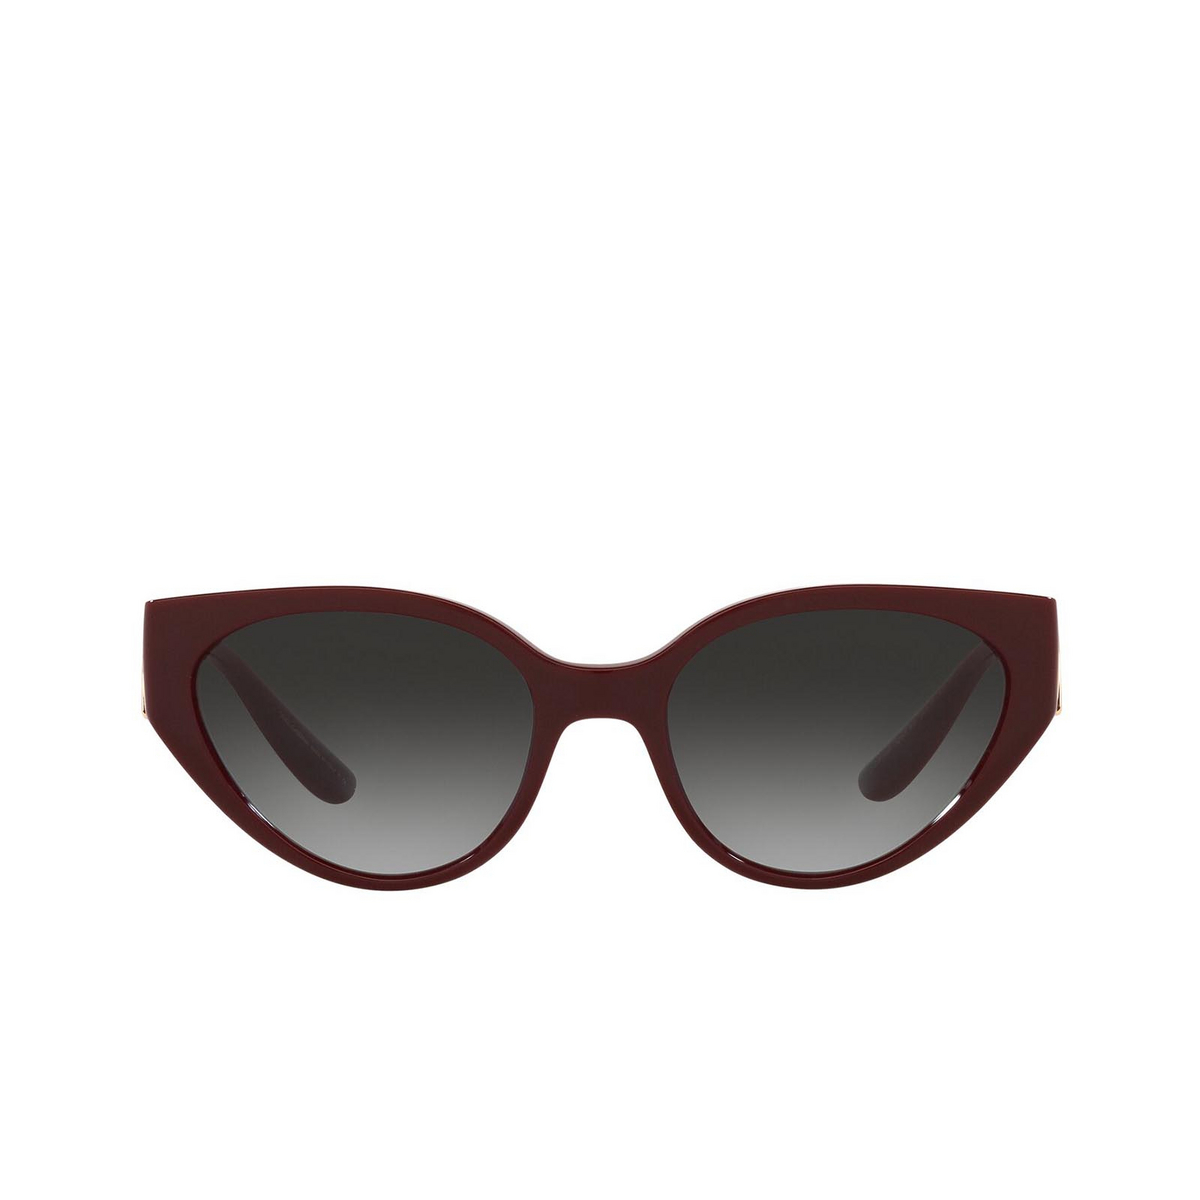 Dolce & Gabbana® Cat-eye Sunglasses: DG6146 color Transparent Bordeaux 32858G - front view.